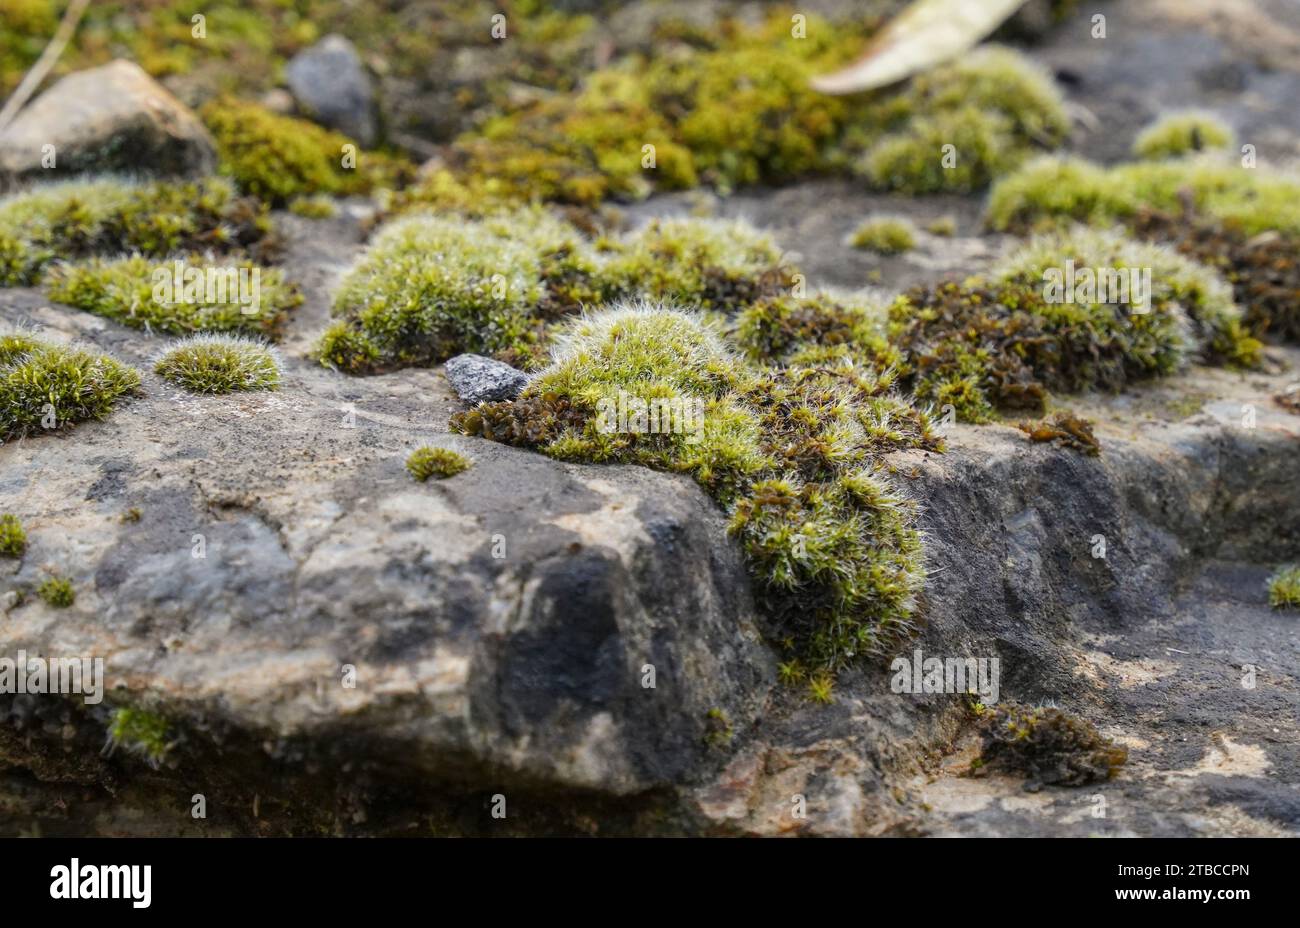 Moss growing on rock. Stock Photo